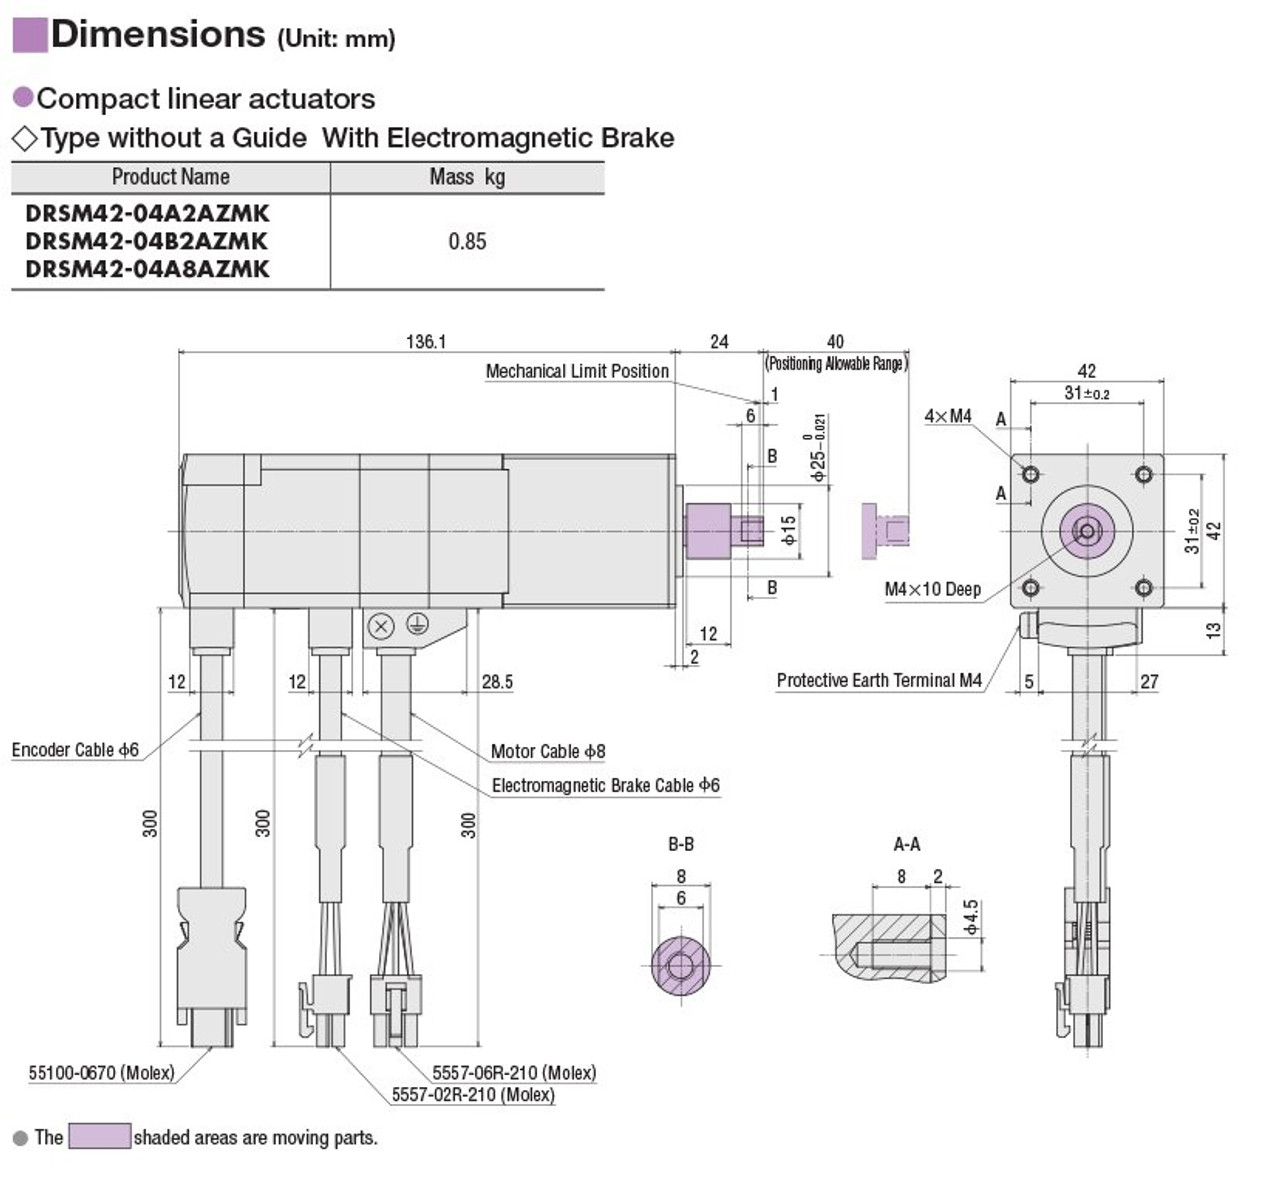 DRSM42-04B2AZMK - Dimensions